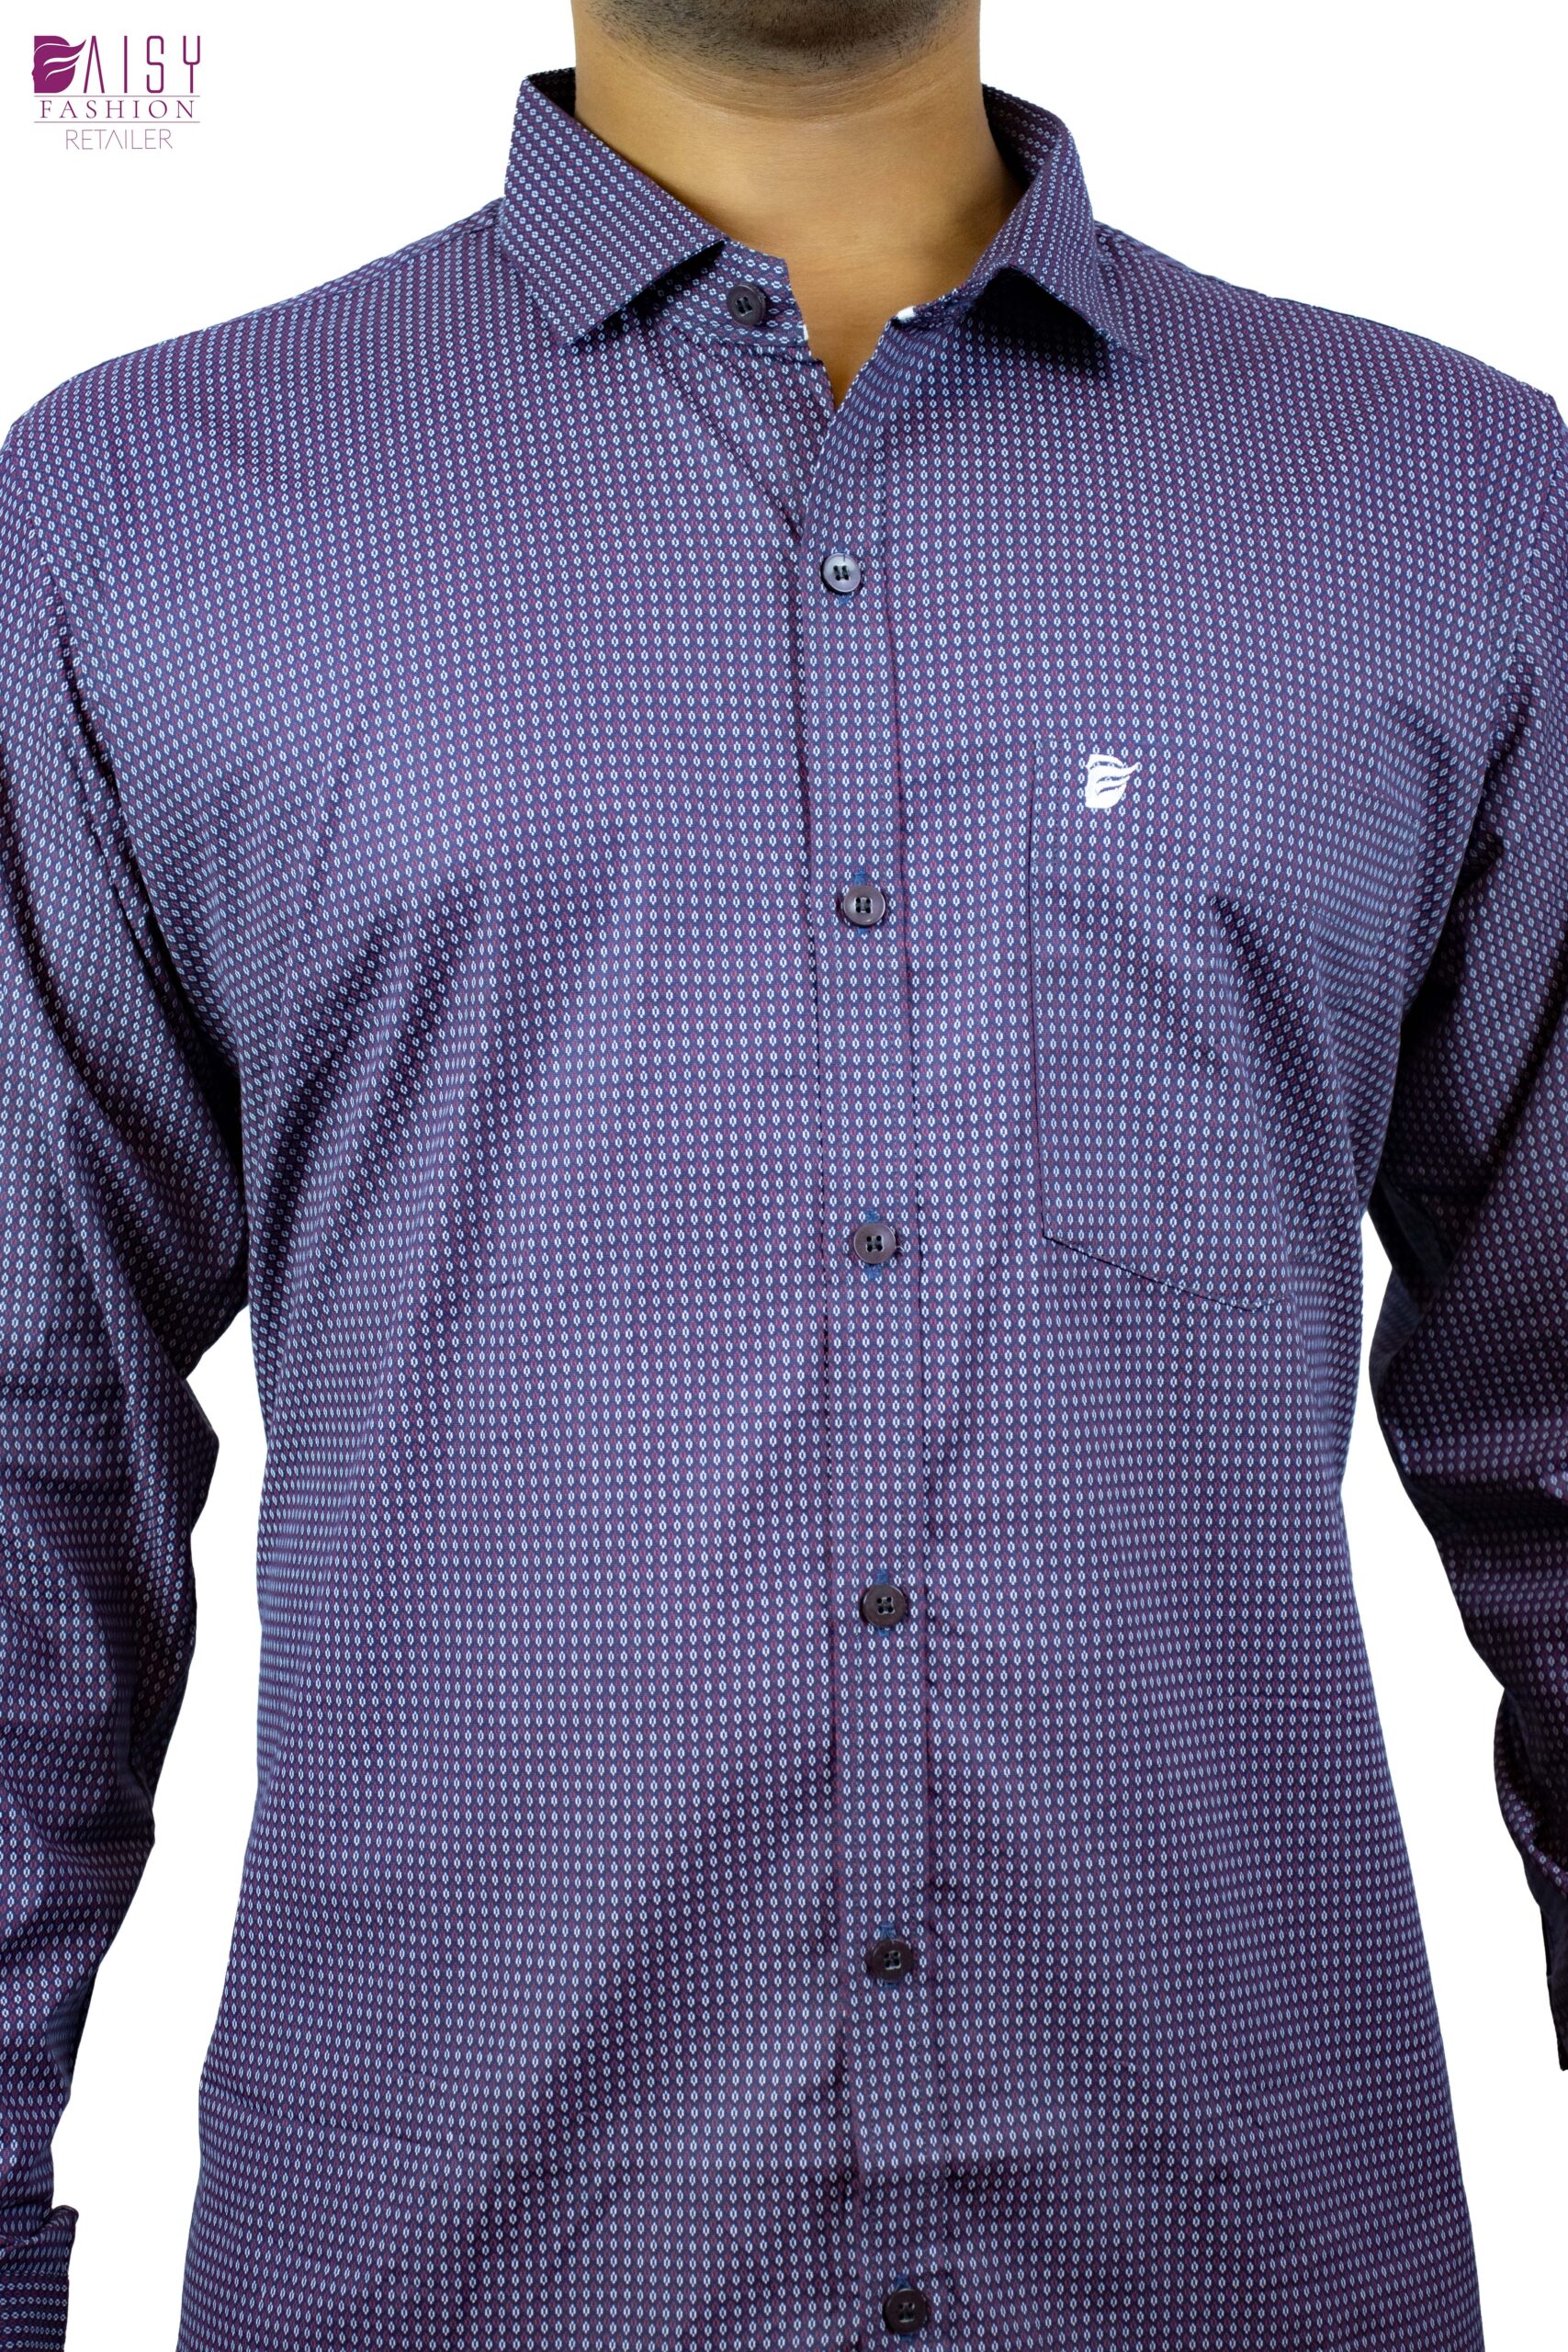 Stylish Cotten Printed Purple Shirt